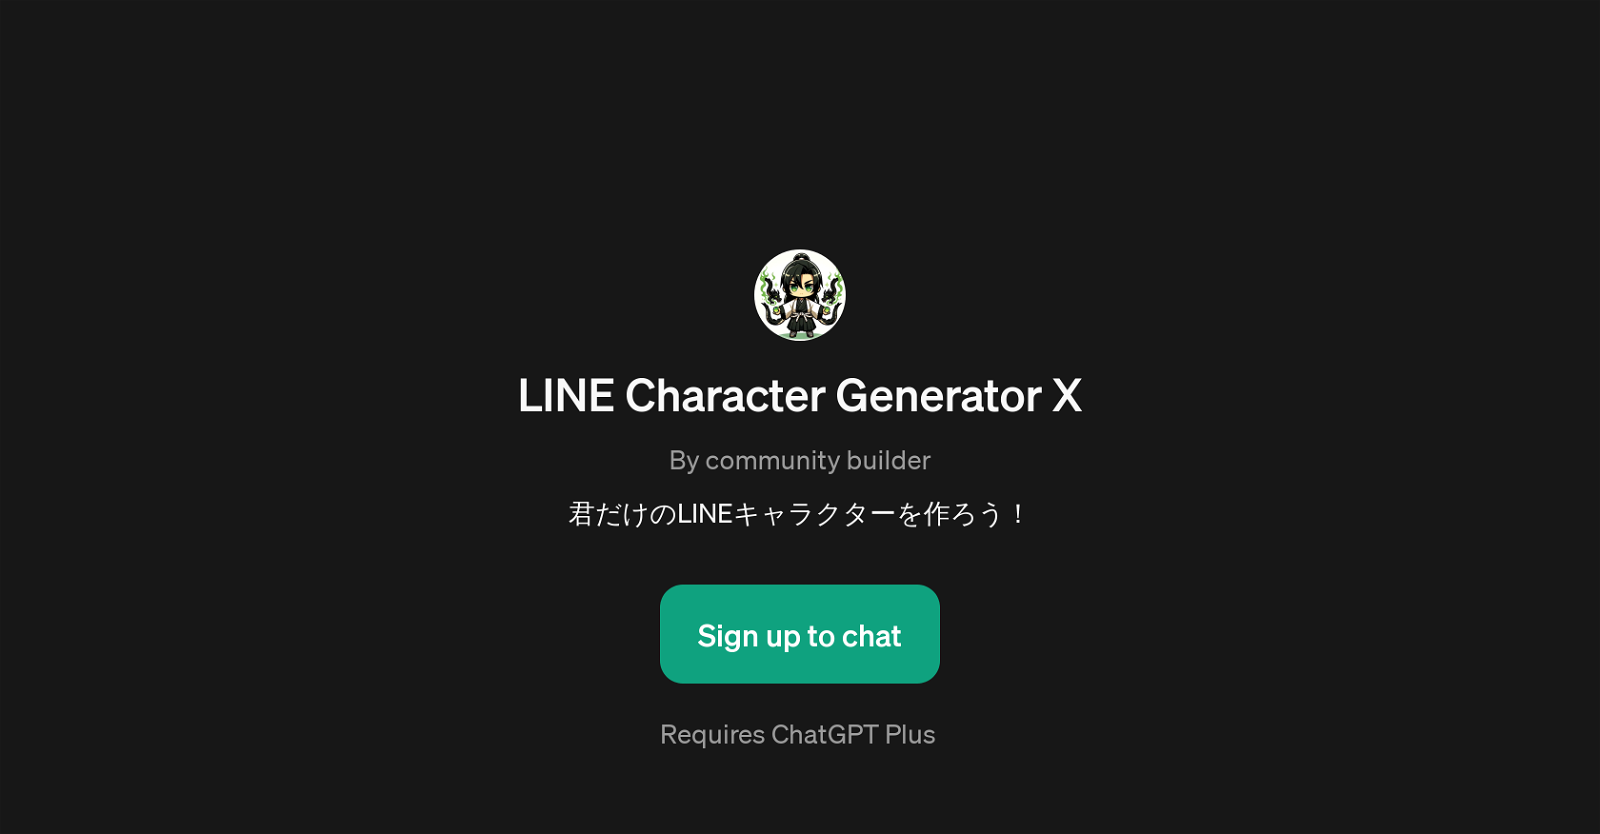 LINE Character Generator X website